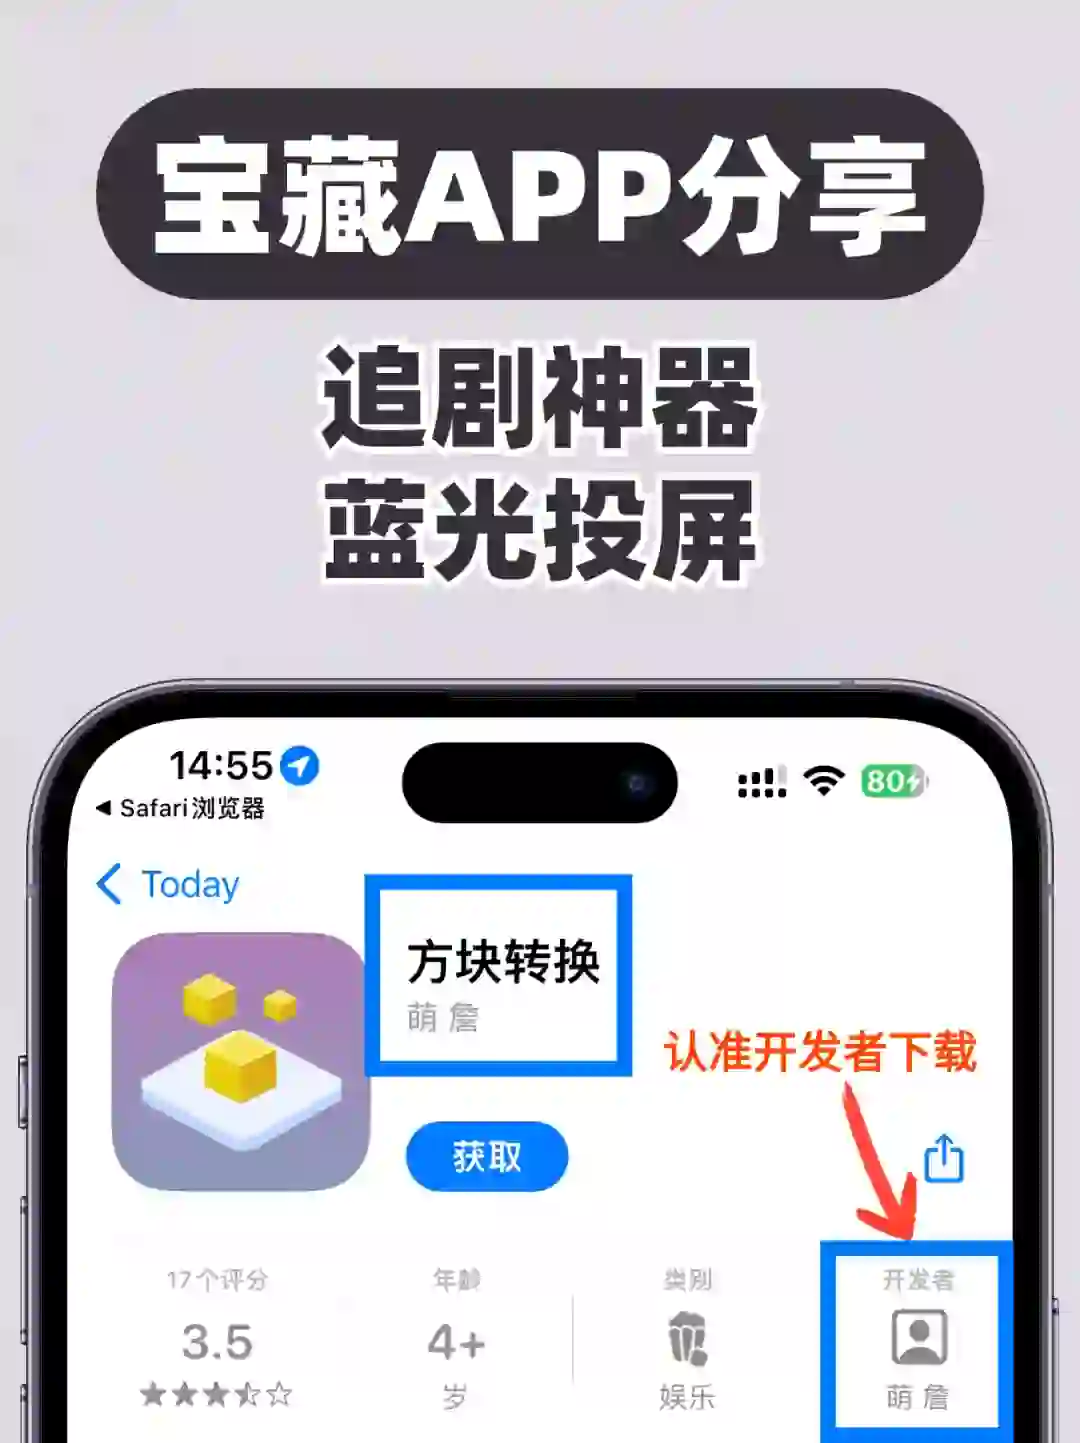 宝藏推荐❗️天花板级别苹果手机免费刷剧APP